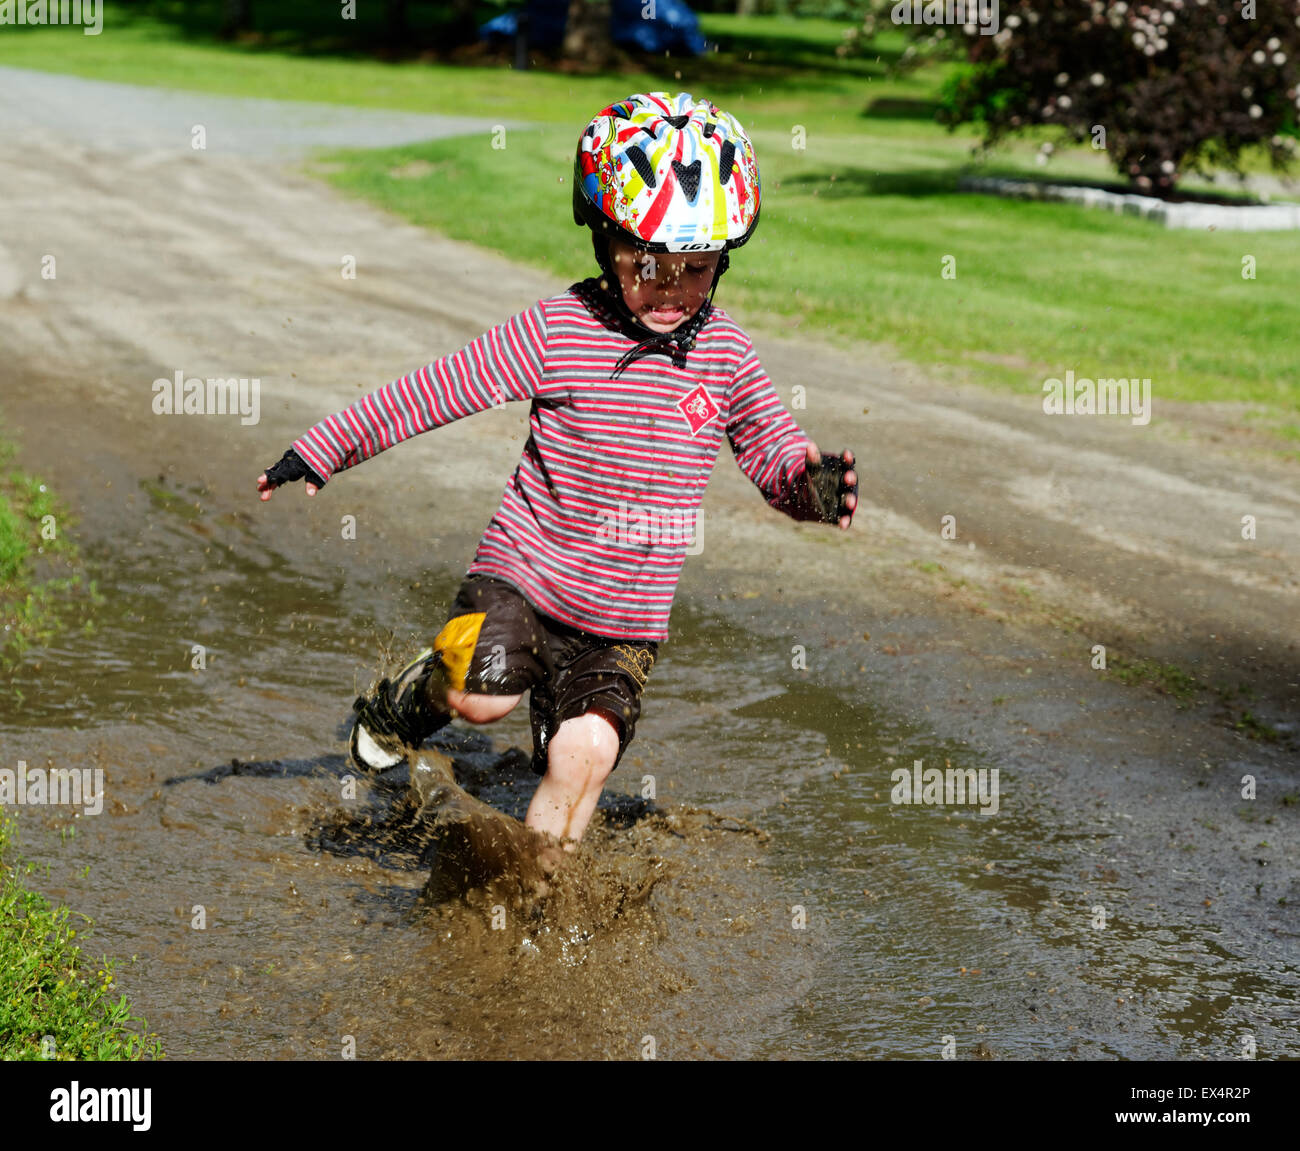 Un joven (3 años) muchacho saltando en un charco lodoso Foto de stock